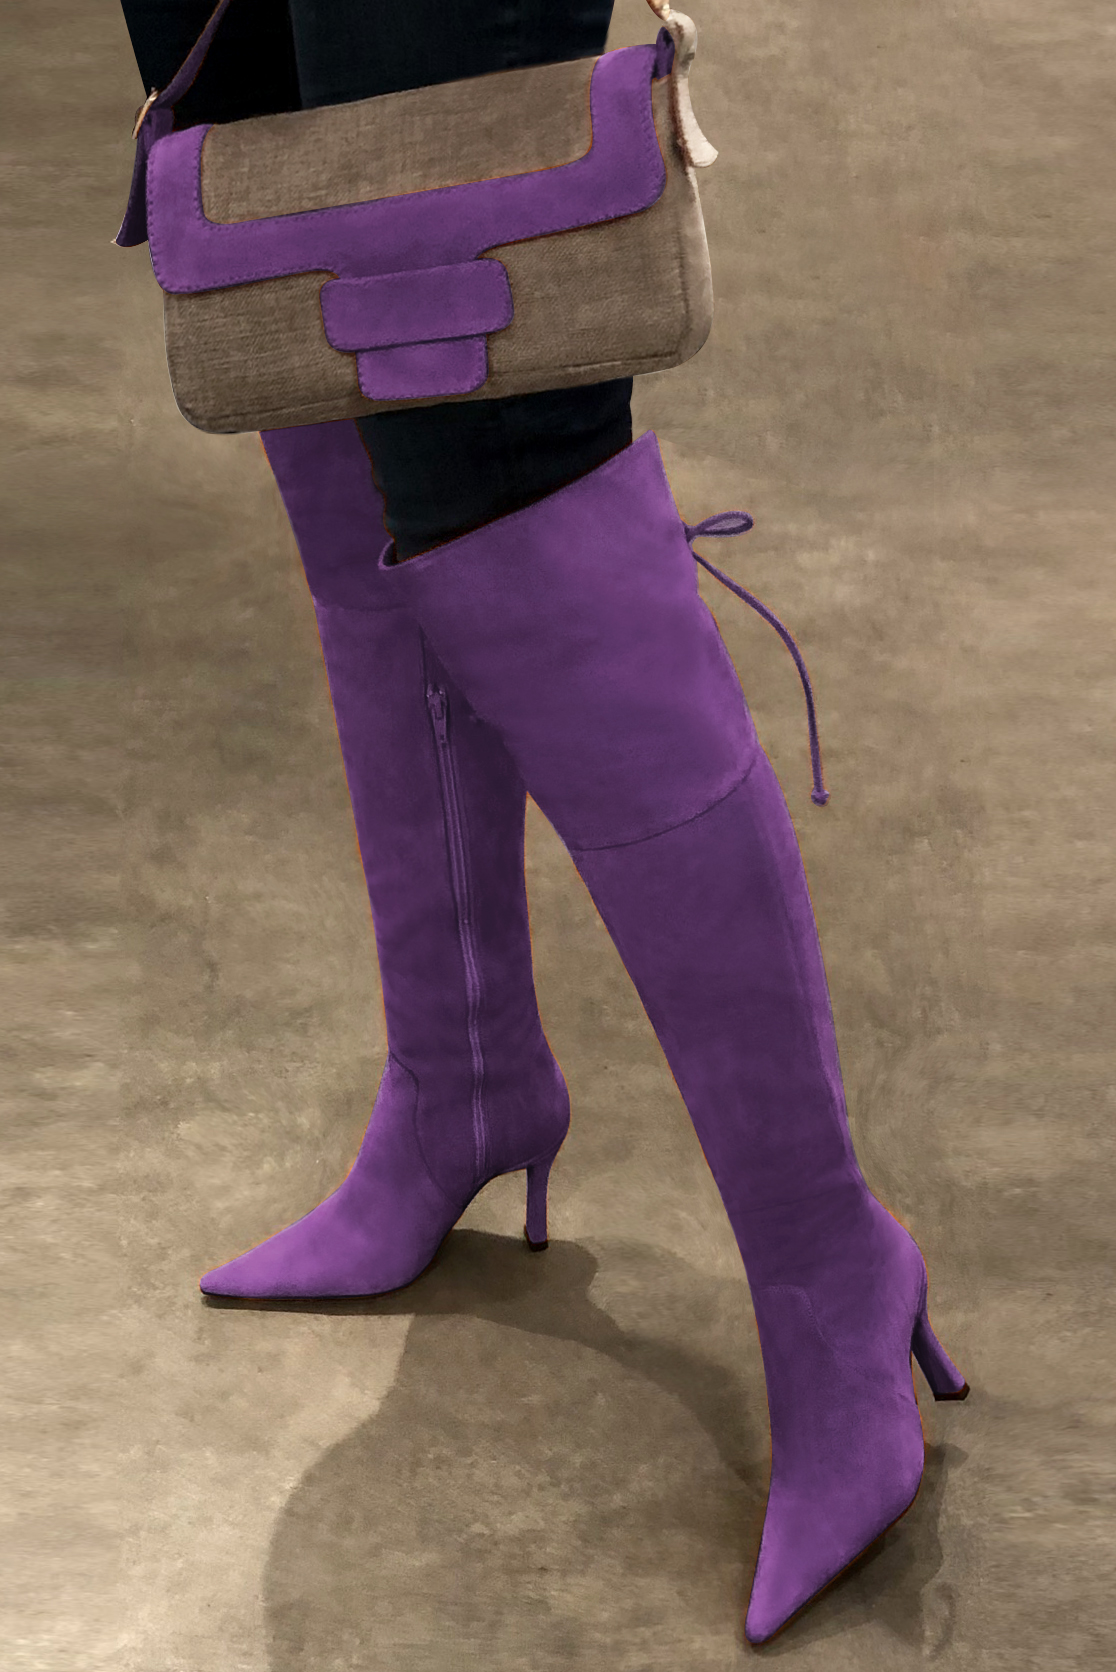 Cuissarde femme : Cuissardes femme en cuir sur mesures couleur violet améthyste. Bout pointu. Talon très haut bobine. Vue porté - Florence KOOIJMAN